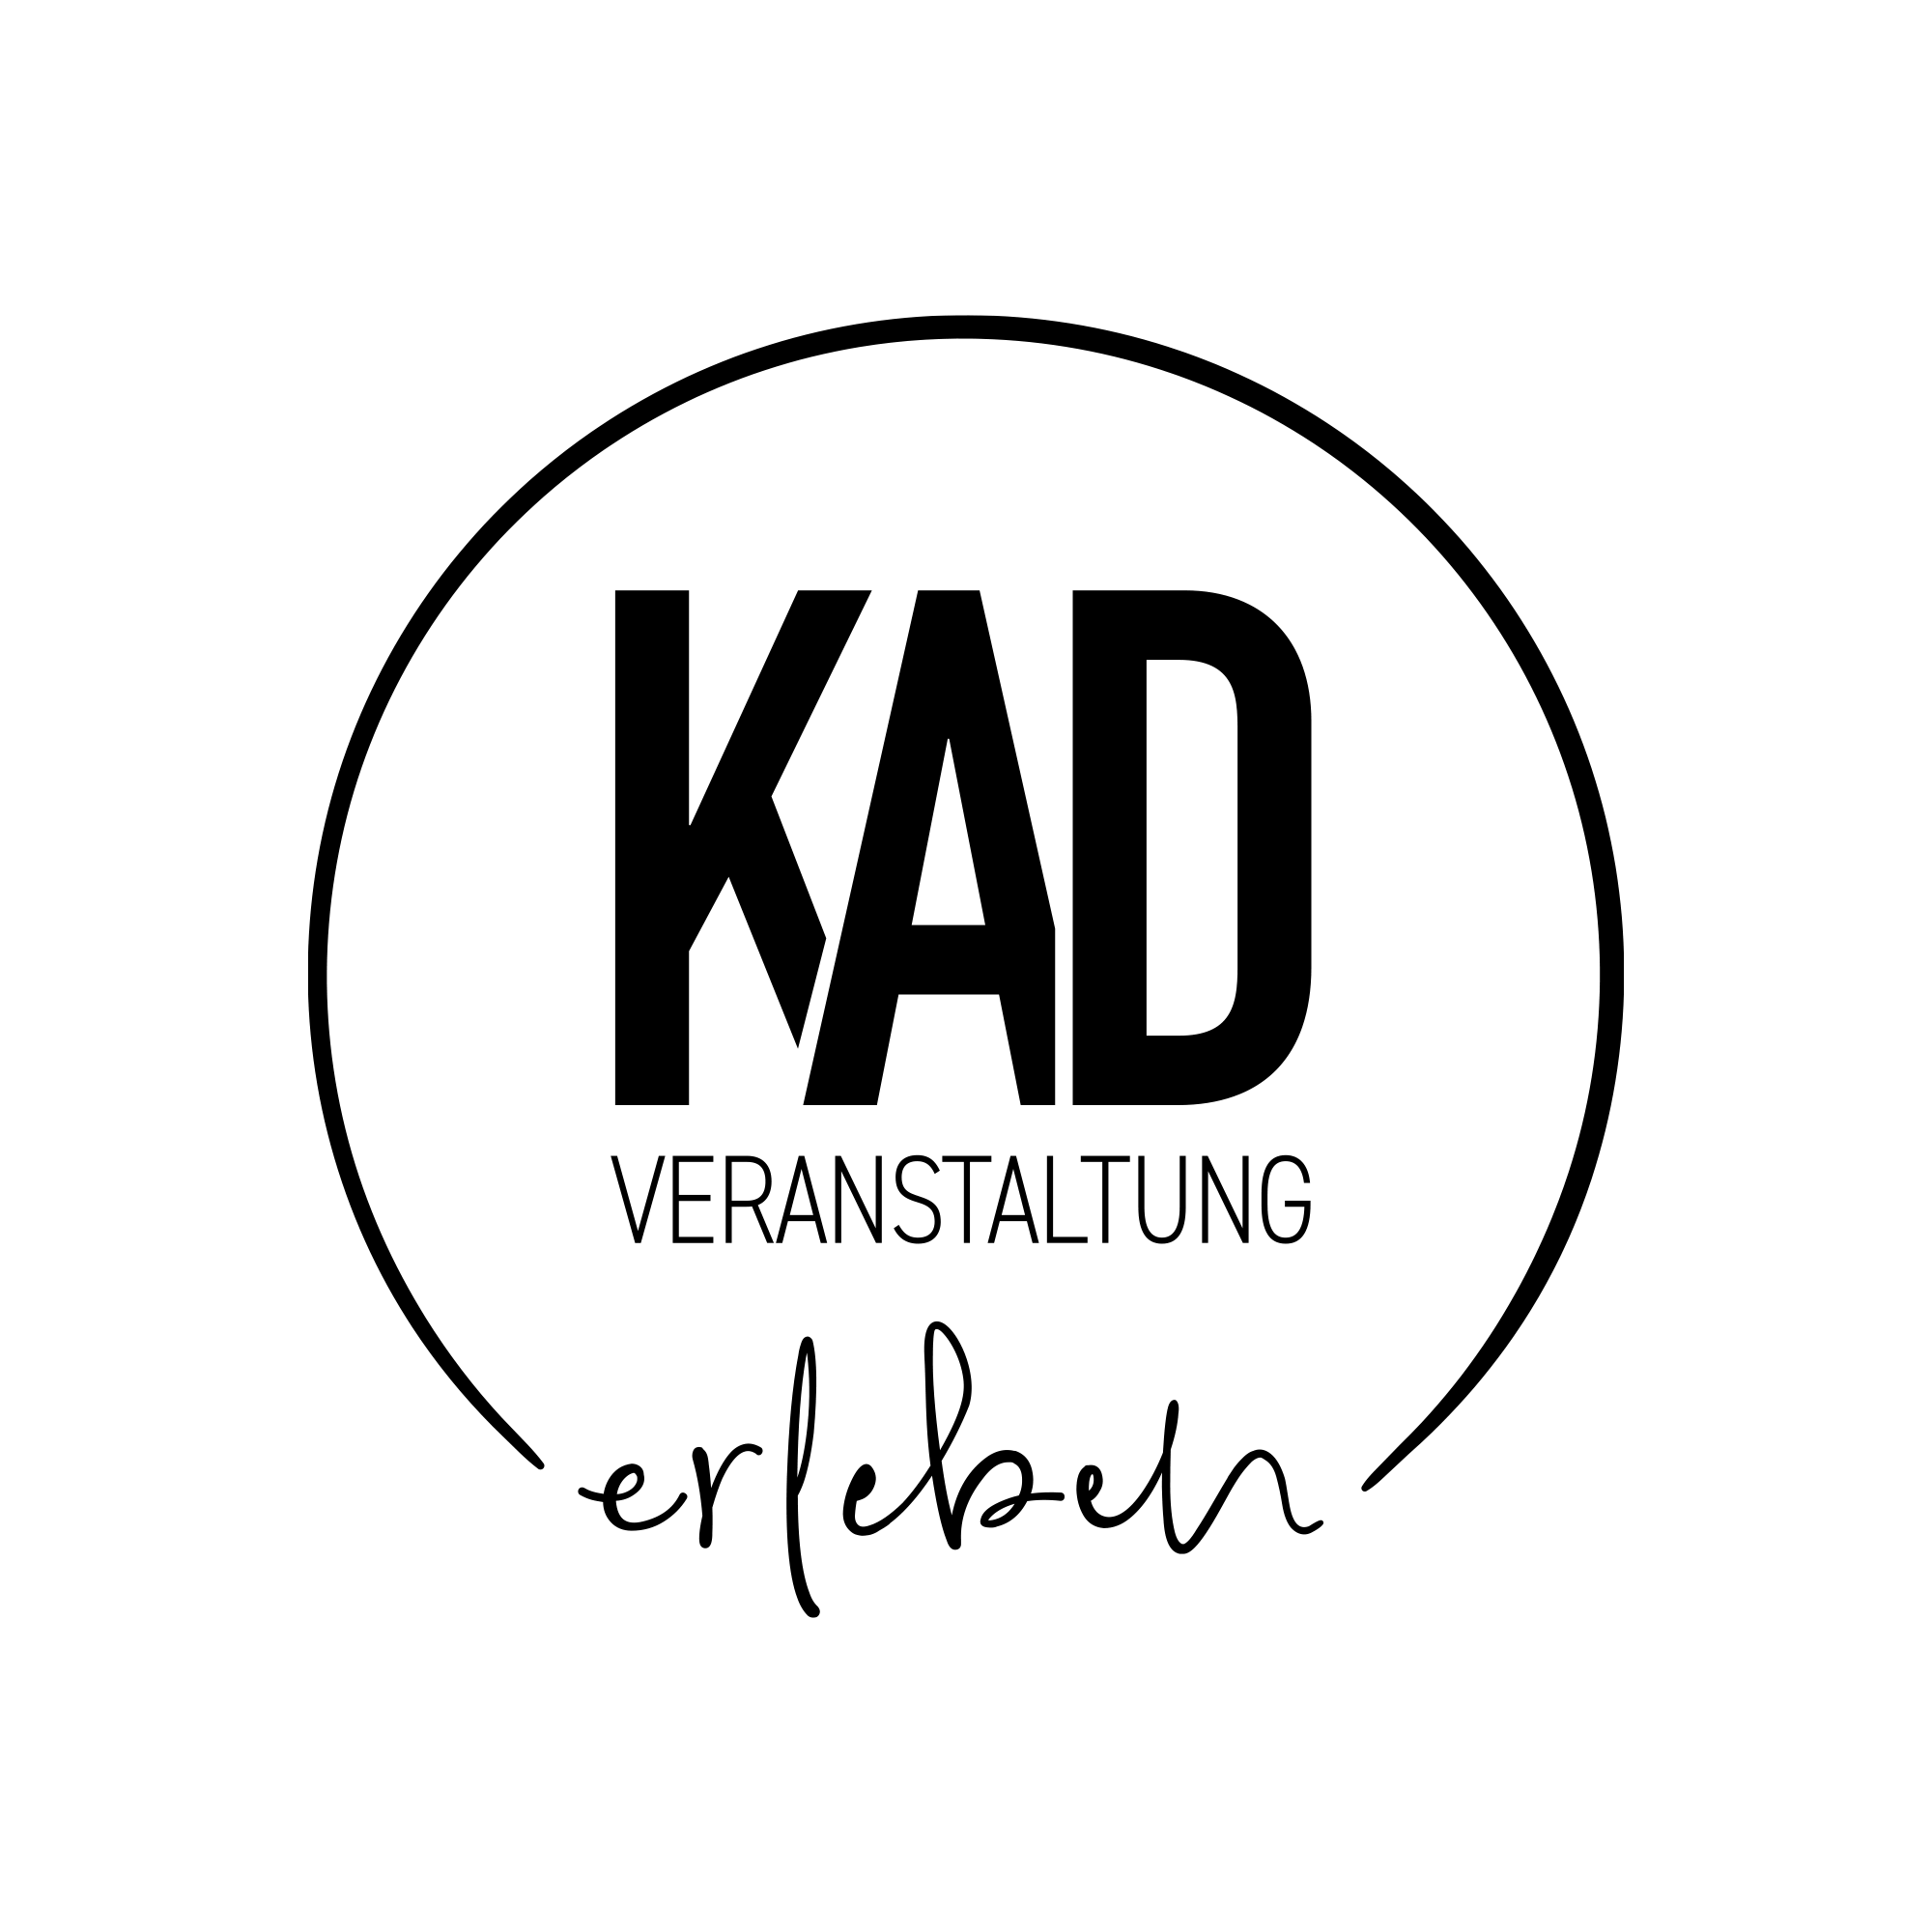 Logo der Eventagentur KAD | Veranstaltung erleben aus Kempten & Herten in Schwarz auf transparentem Hintergrund.